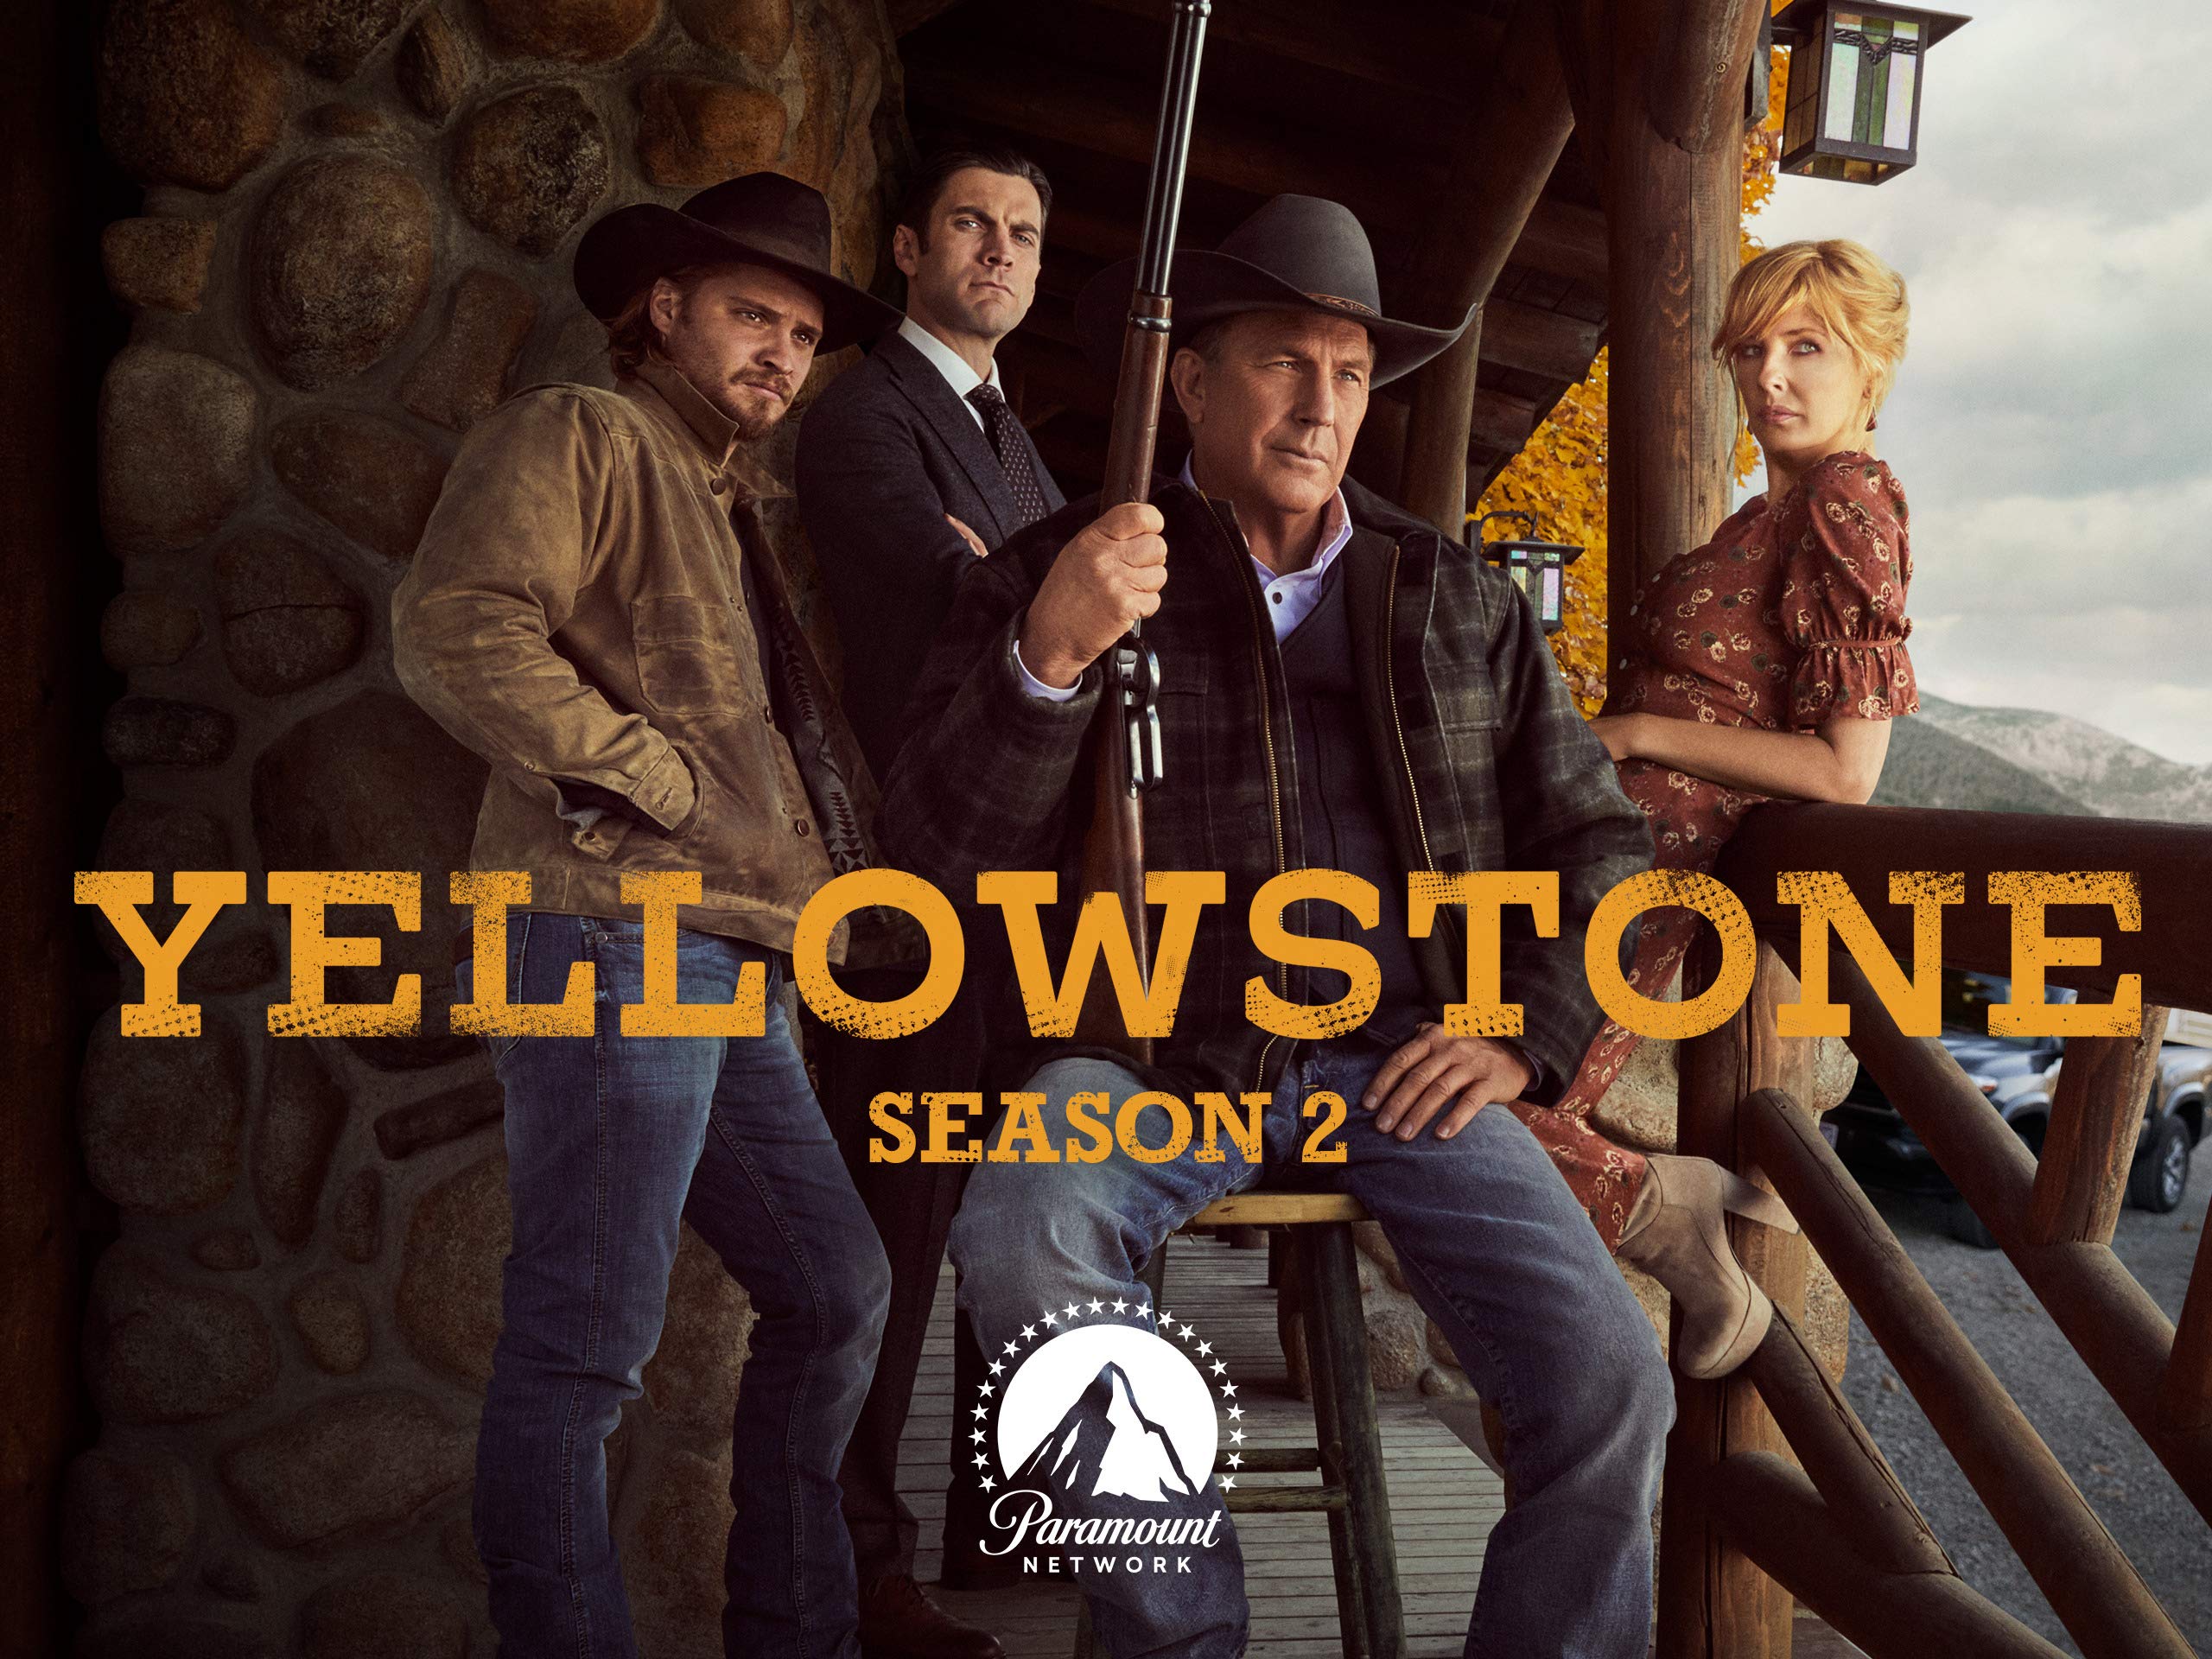 Yellowstone serie ¿Dónde la podemos ver? ¿Está en Netflix?